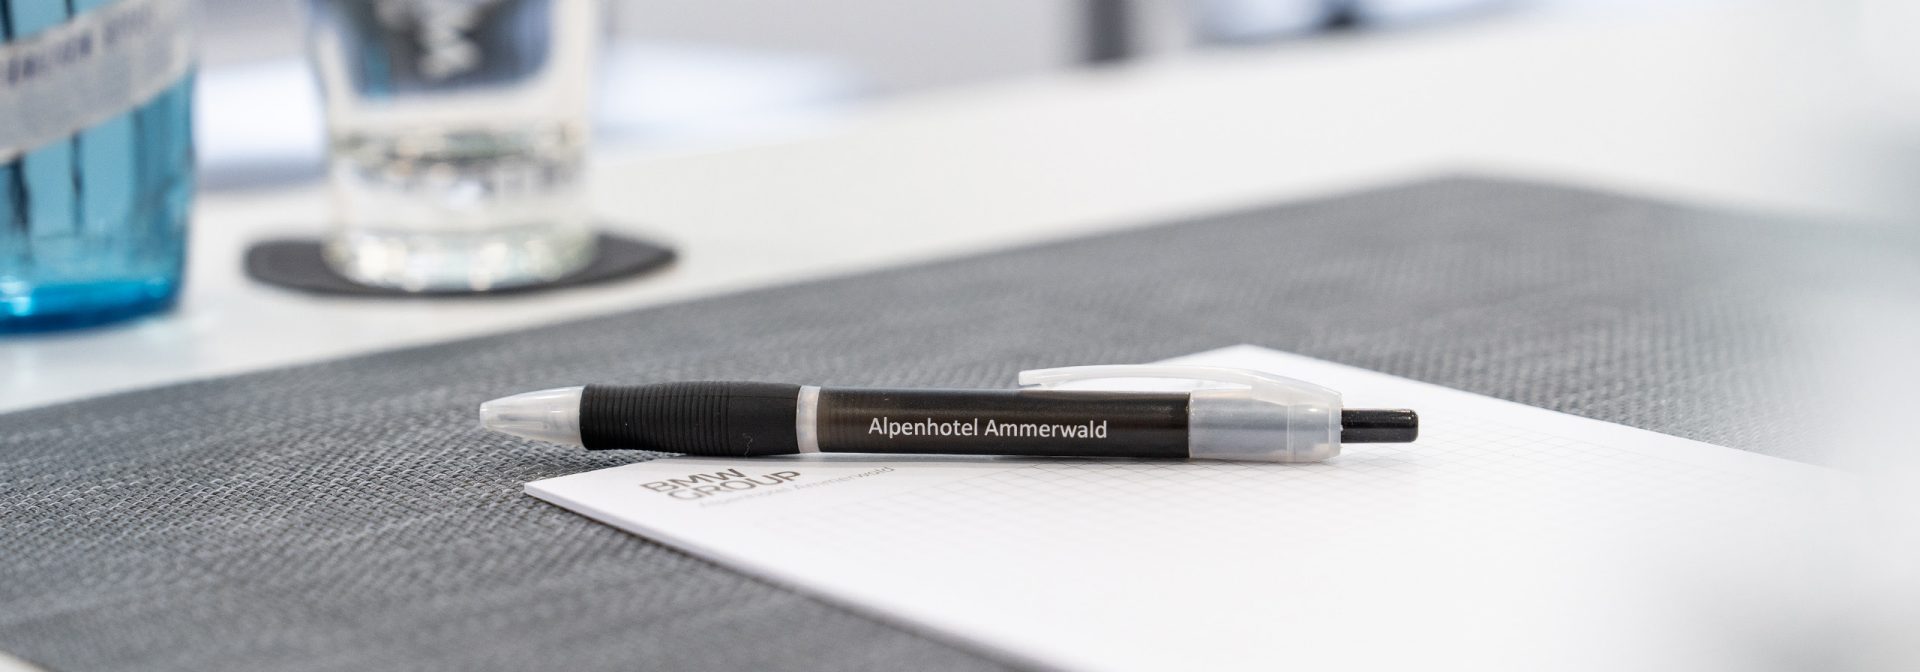 Ein Kugelschreiber mit der Aufschrift “Alpenhotel Ammerwald” liegt auf einem Block.